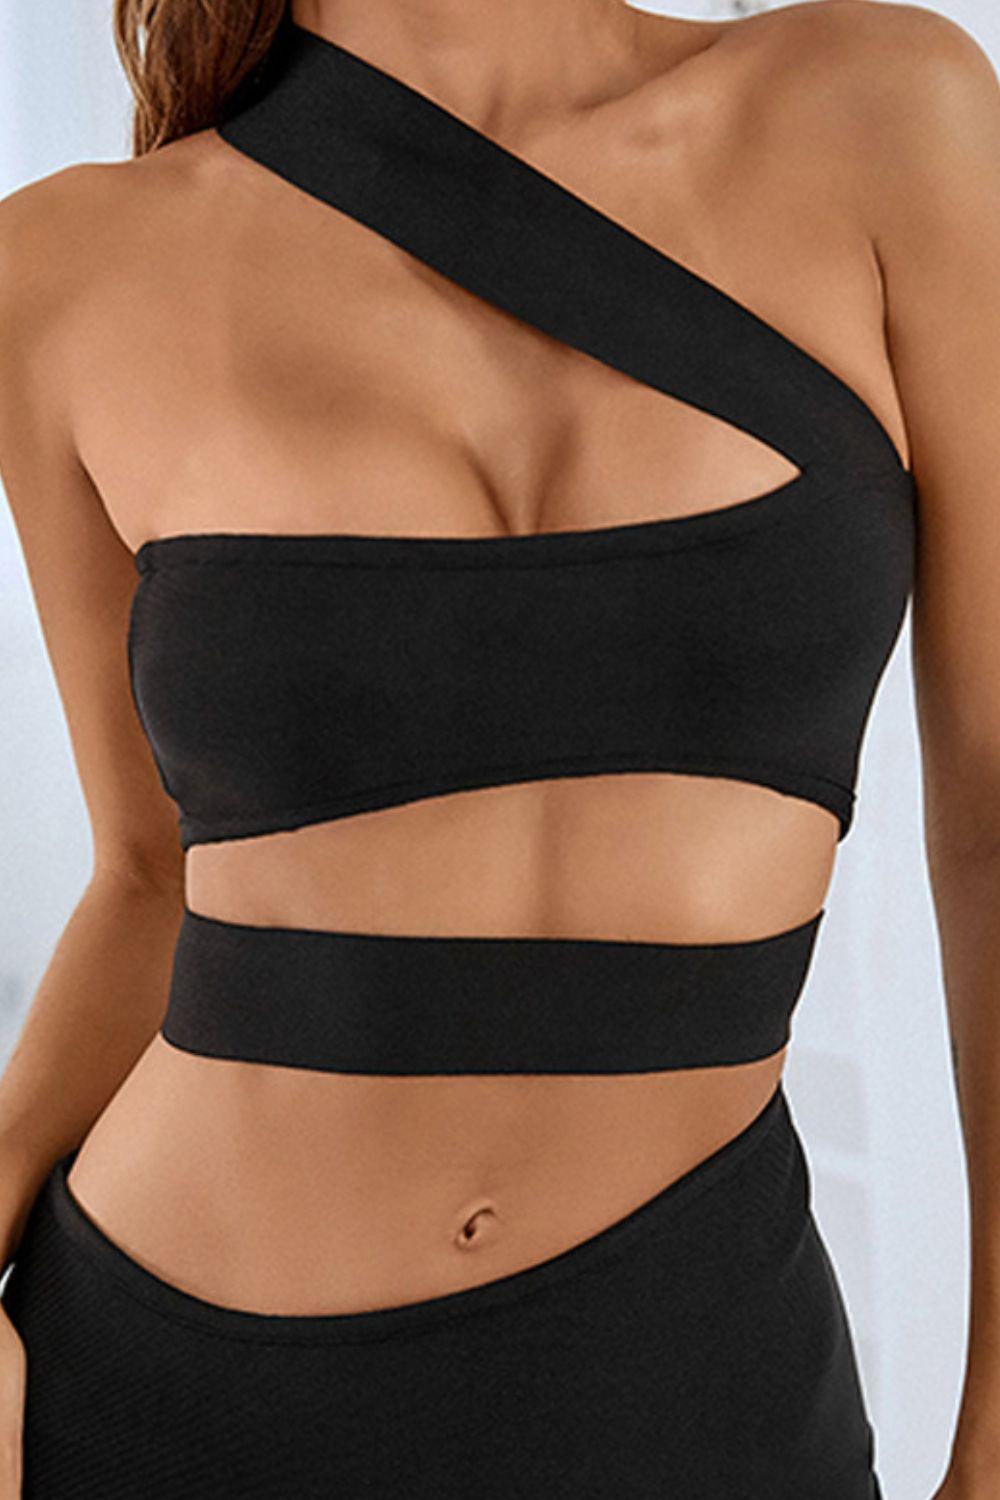 Irresistible Black One-Shoulder Cutout Dress - MXSTUDIO.COM